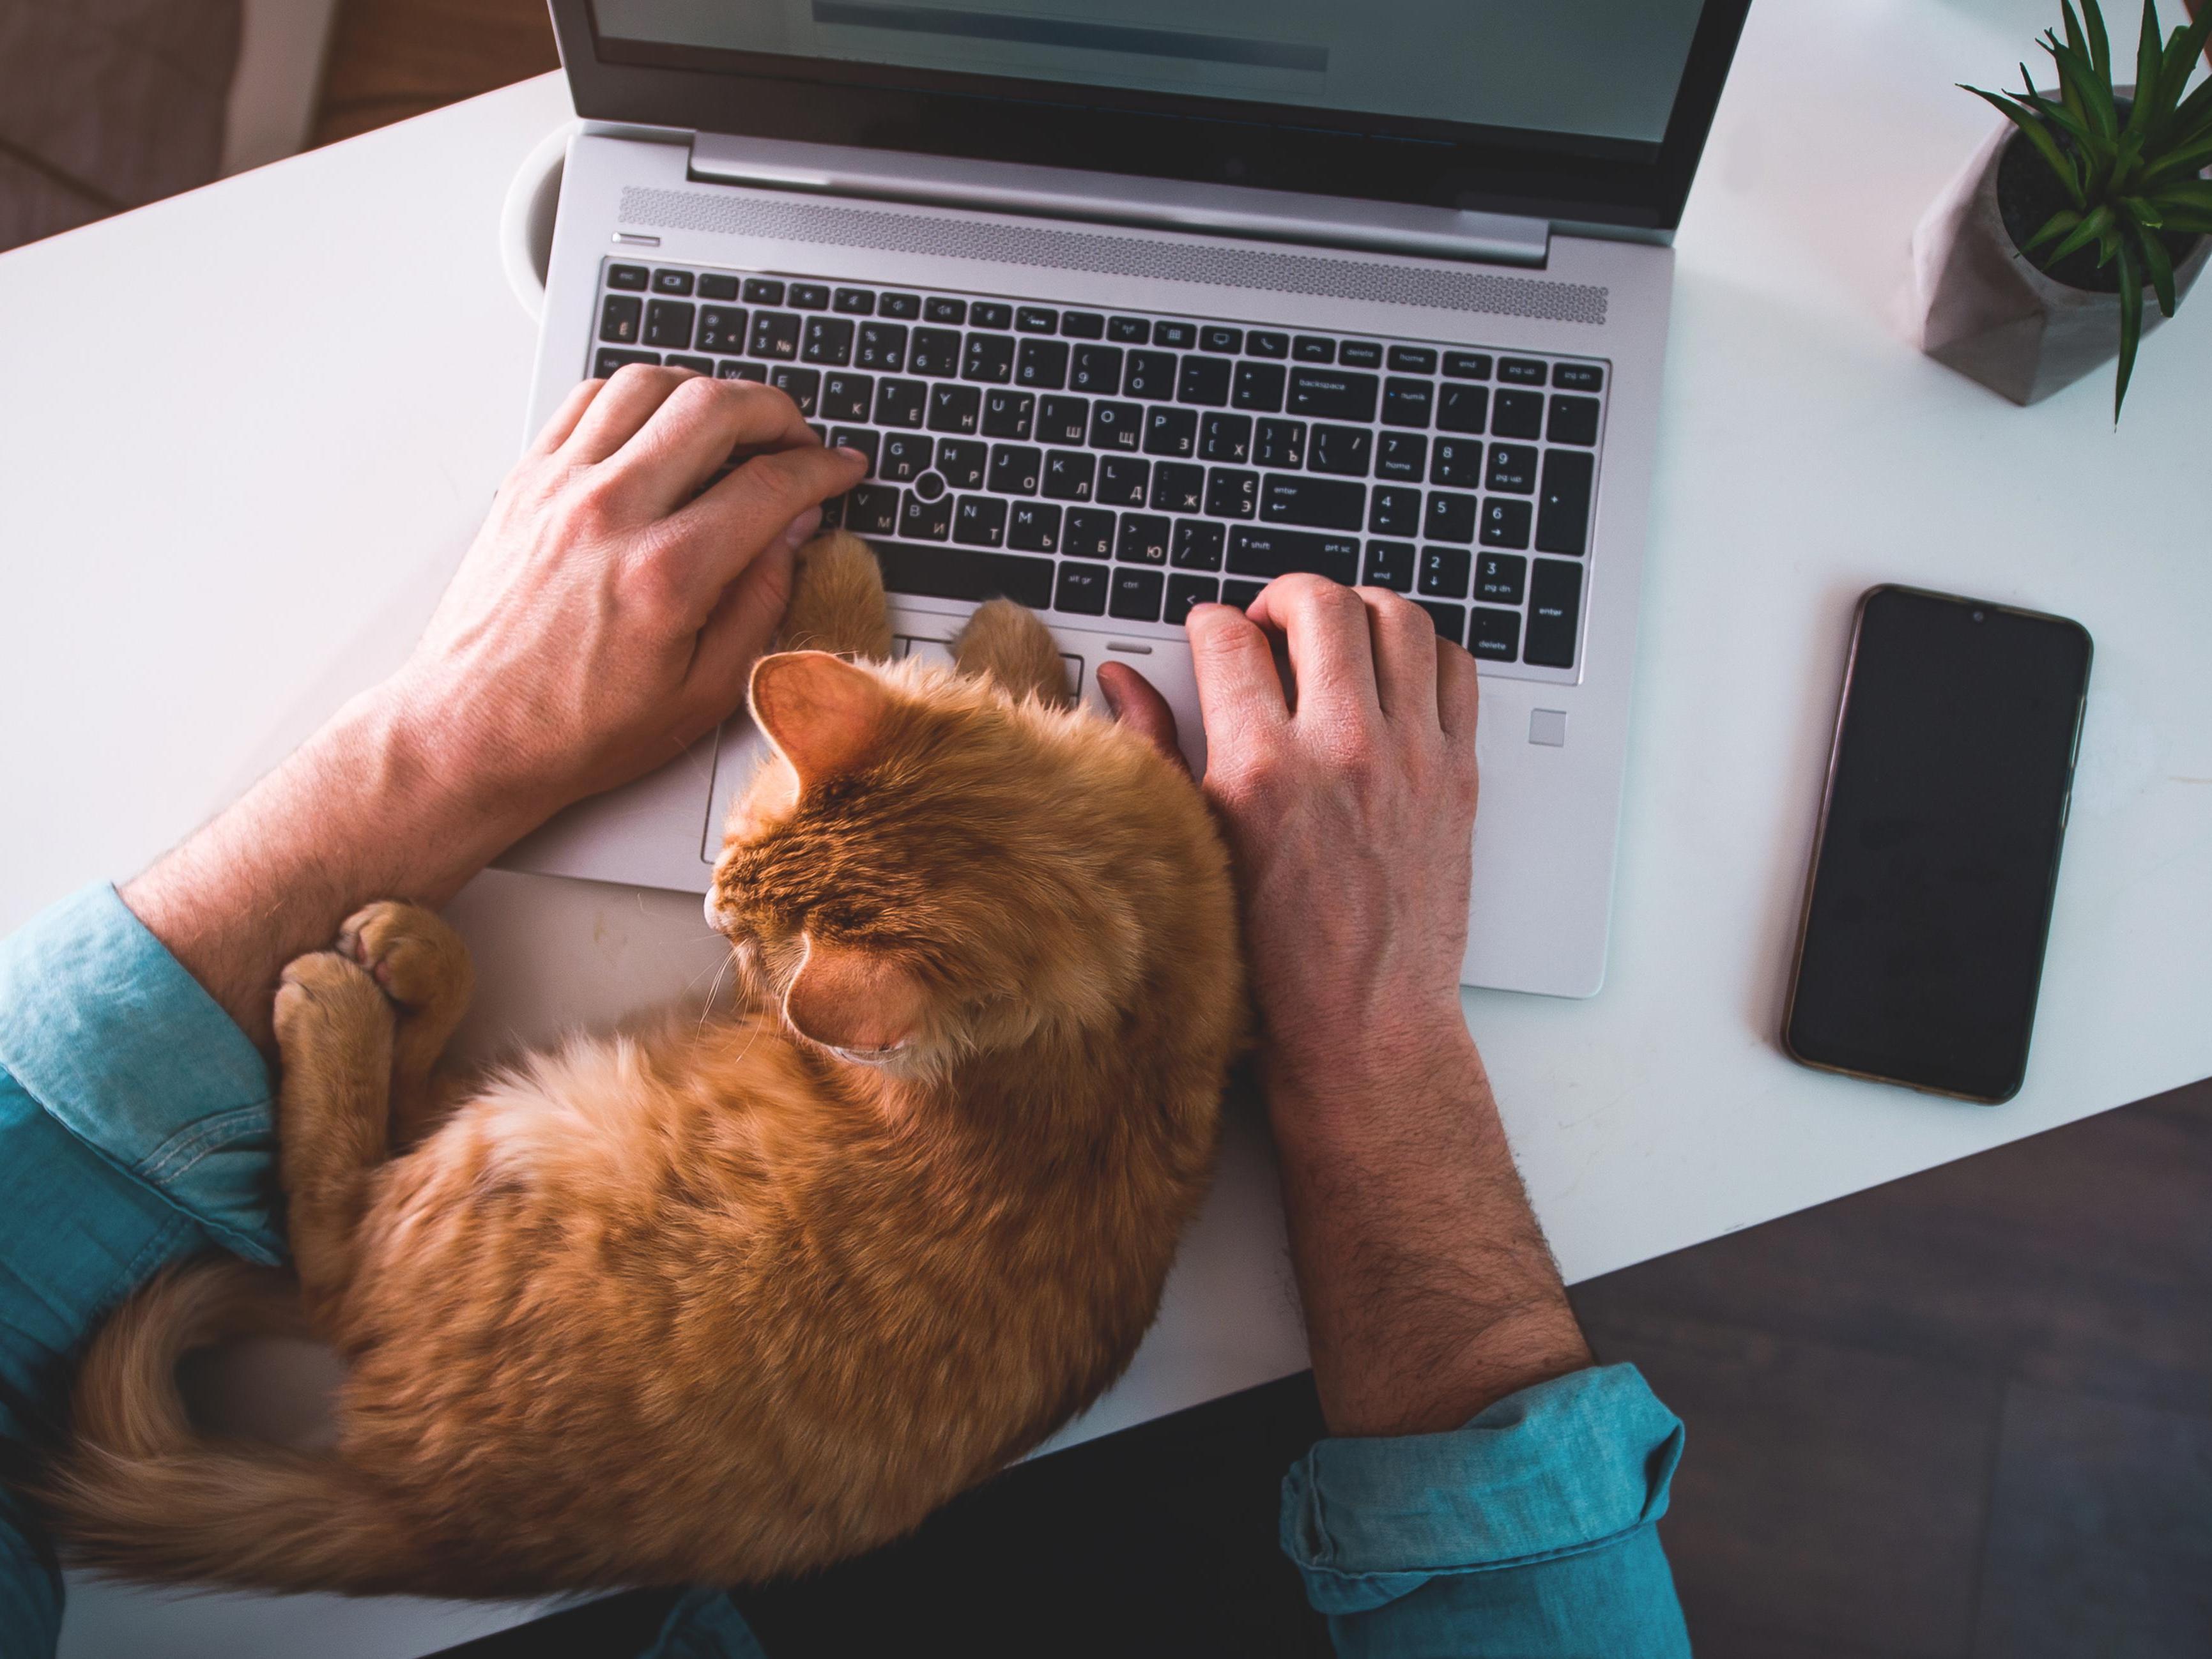 Iemand die aan het werken is op de laptop, met een kat tussen de armen